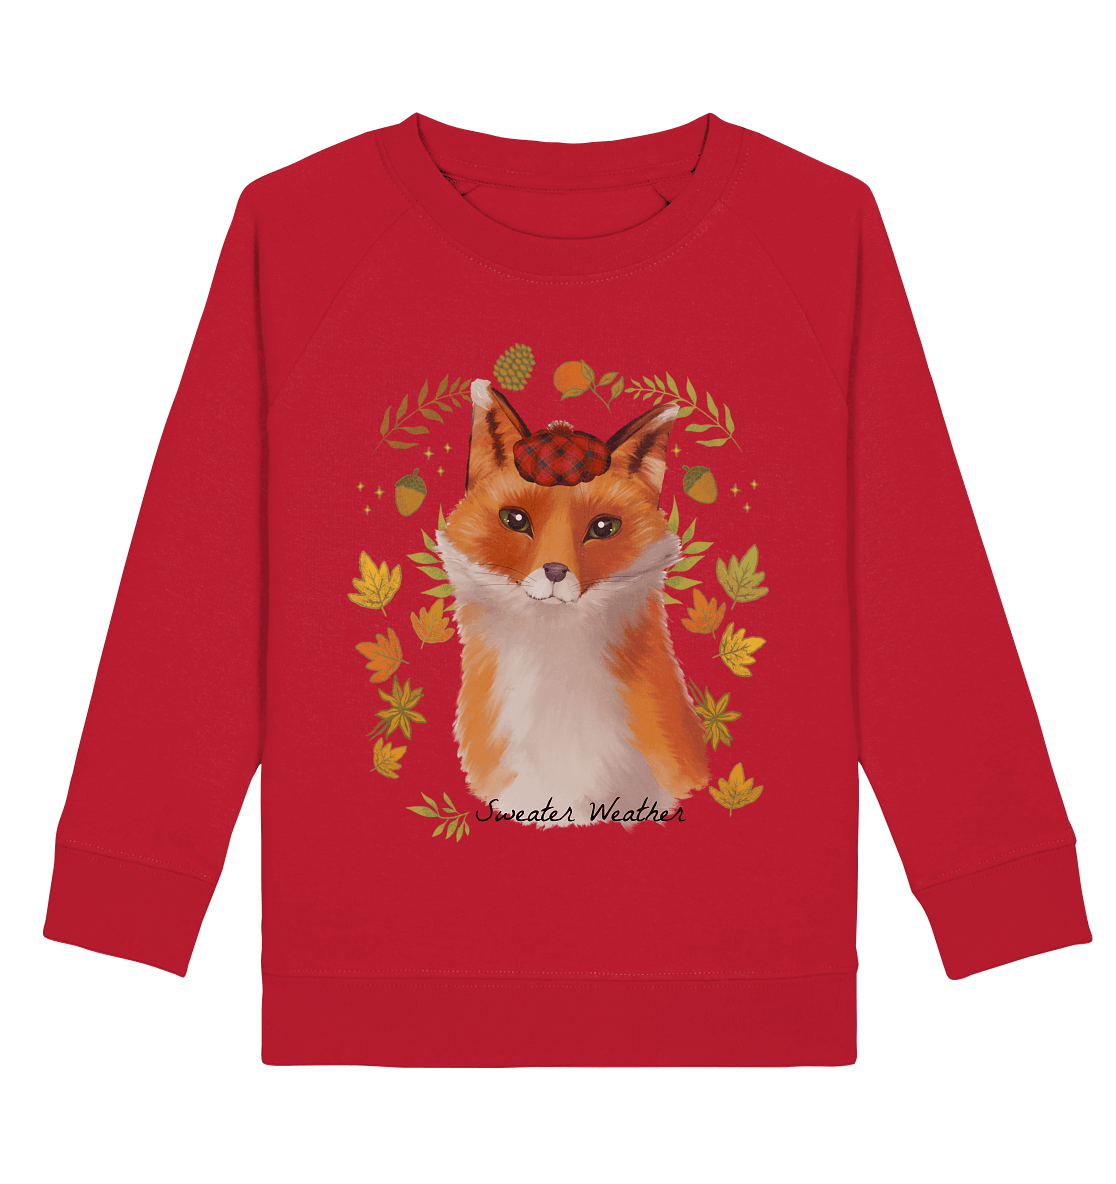 Fuchs im Herbst Kinder Sweatshirt in rot mit kleinem Fuchs